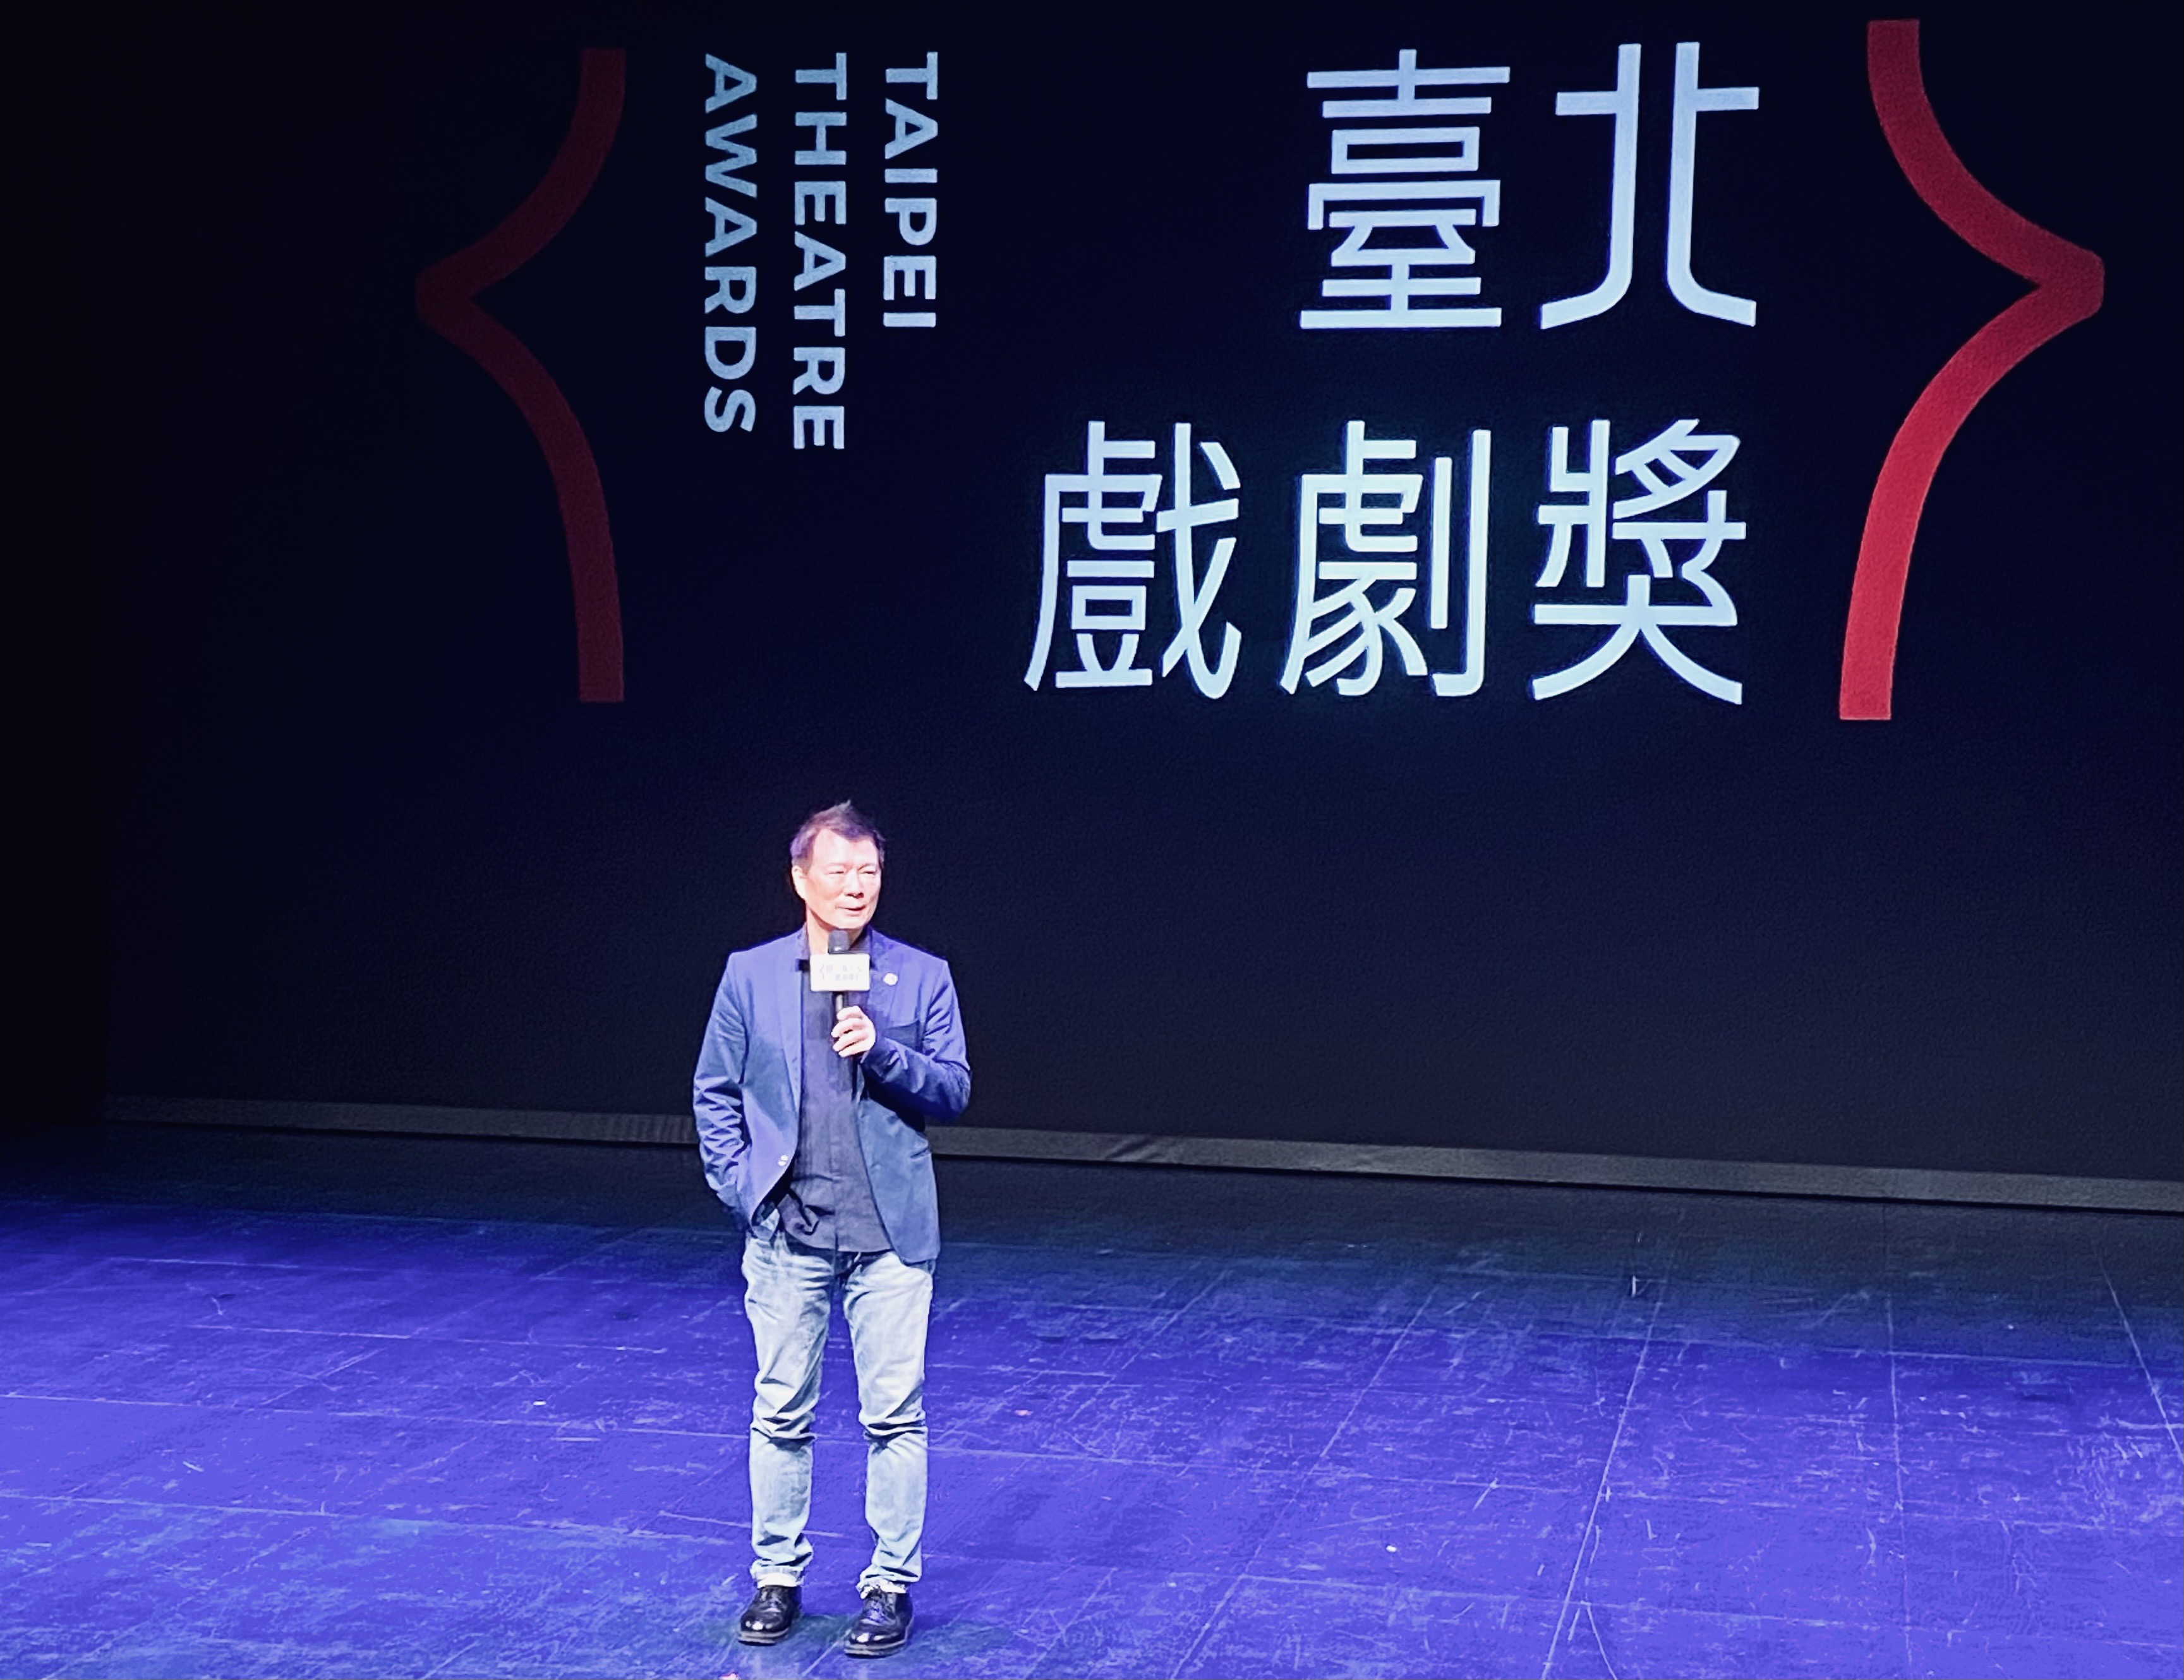  號稱台北東尼獎的「台北戲劇獎」終成立  明年舉行首屆頒獎典禮 